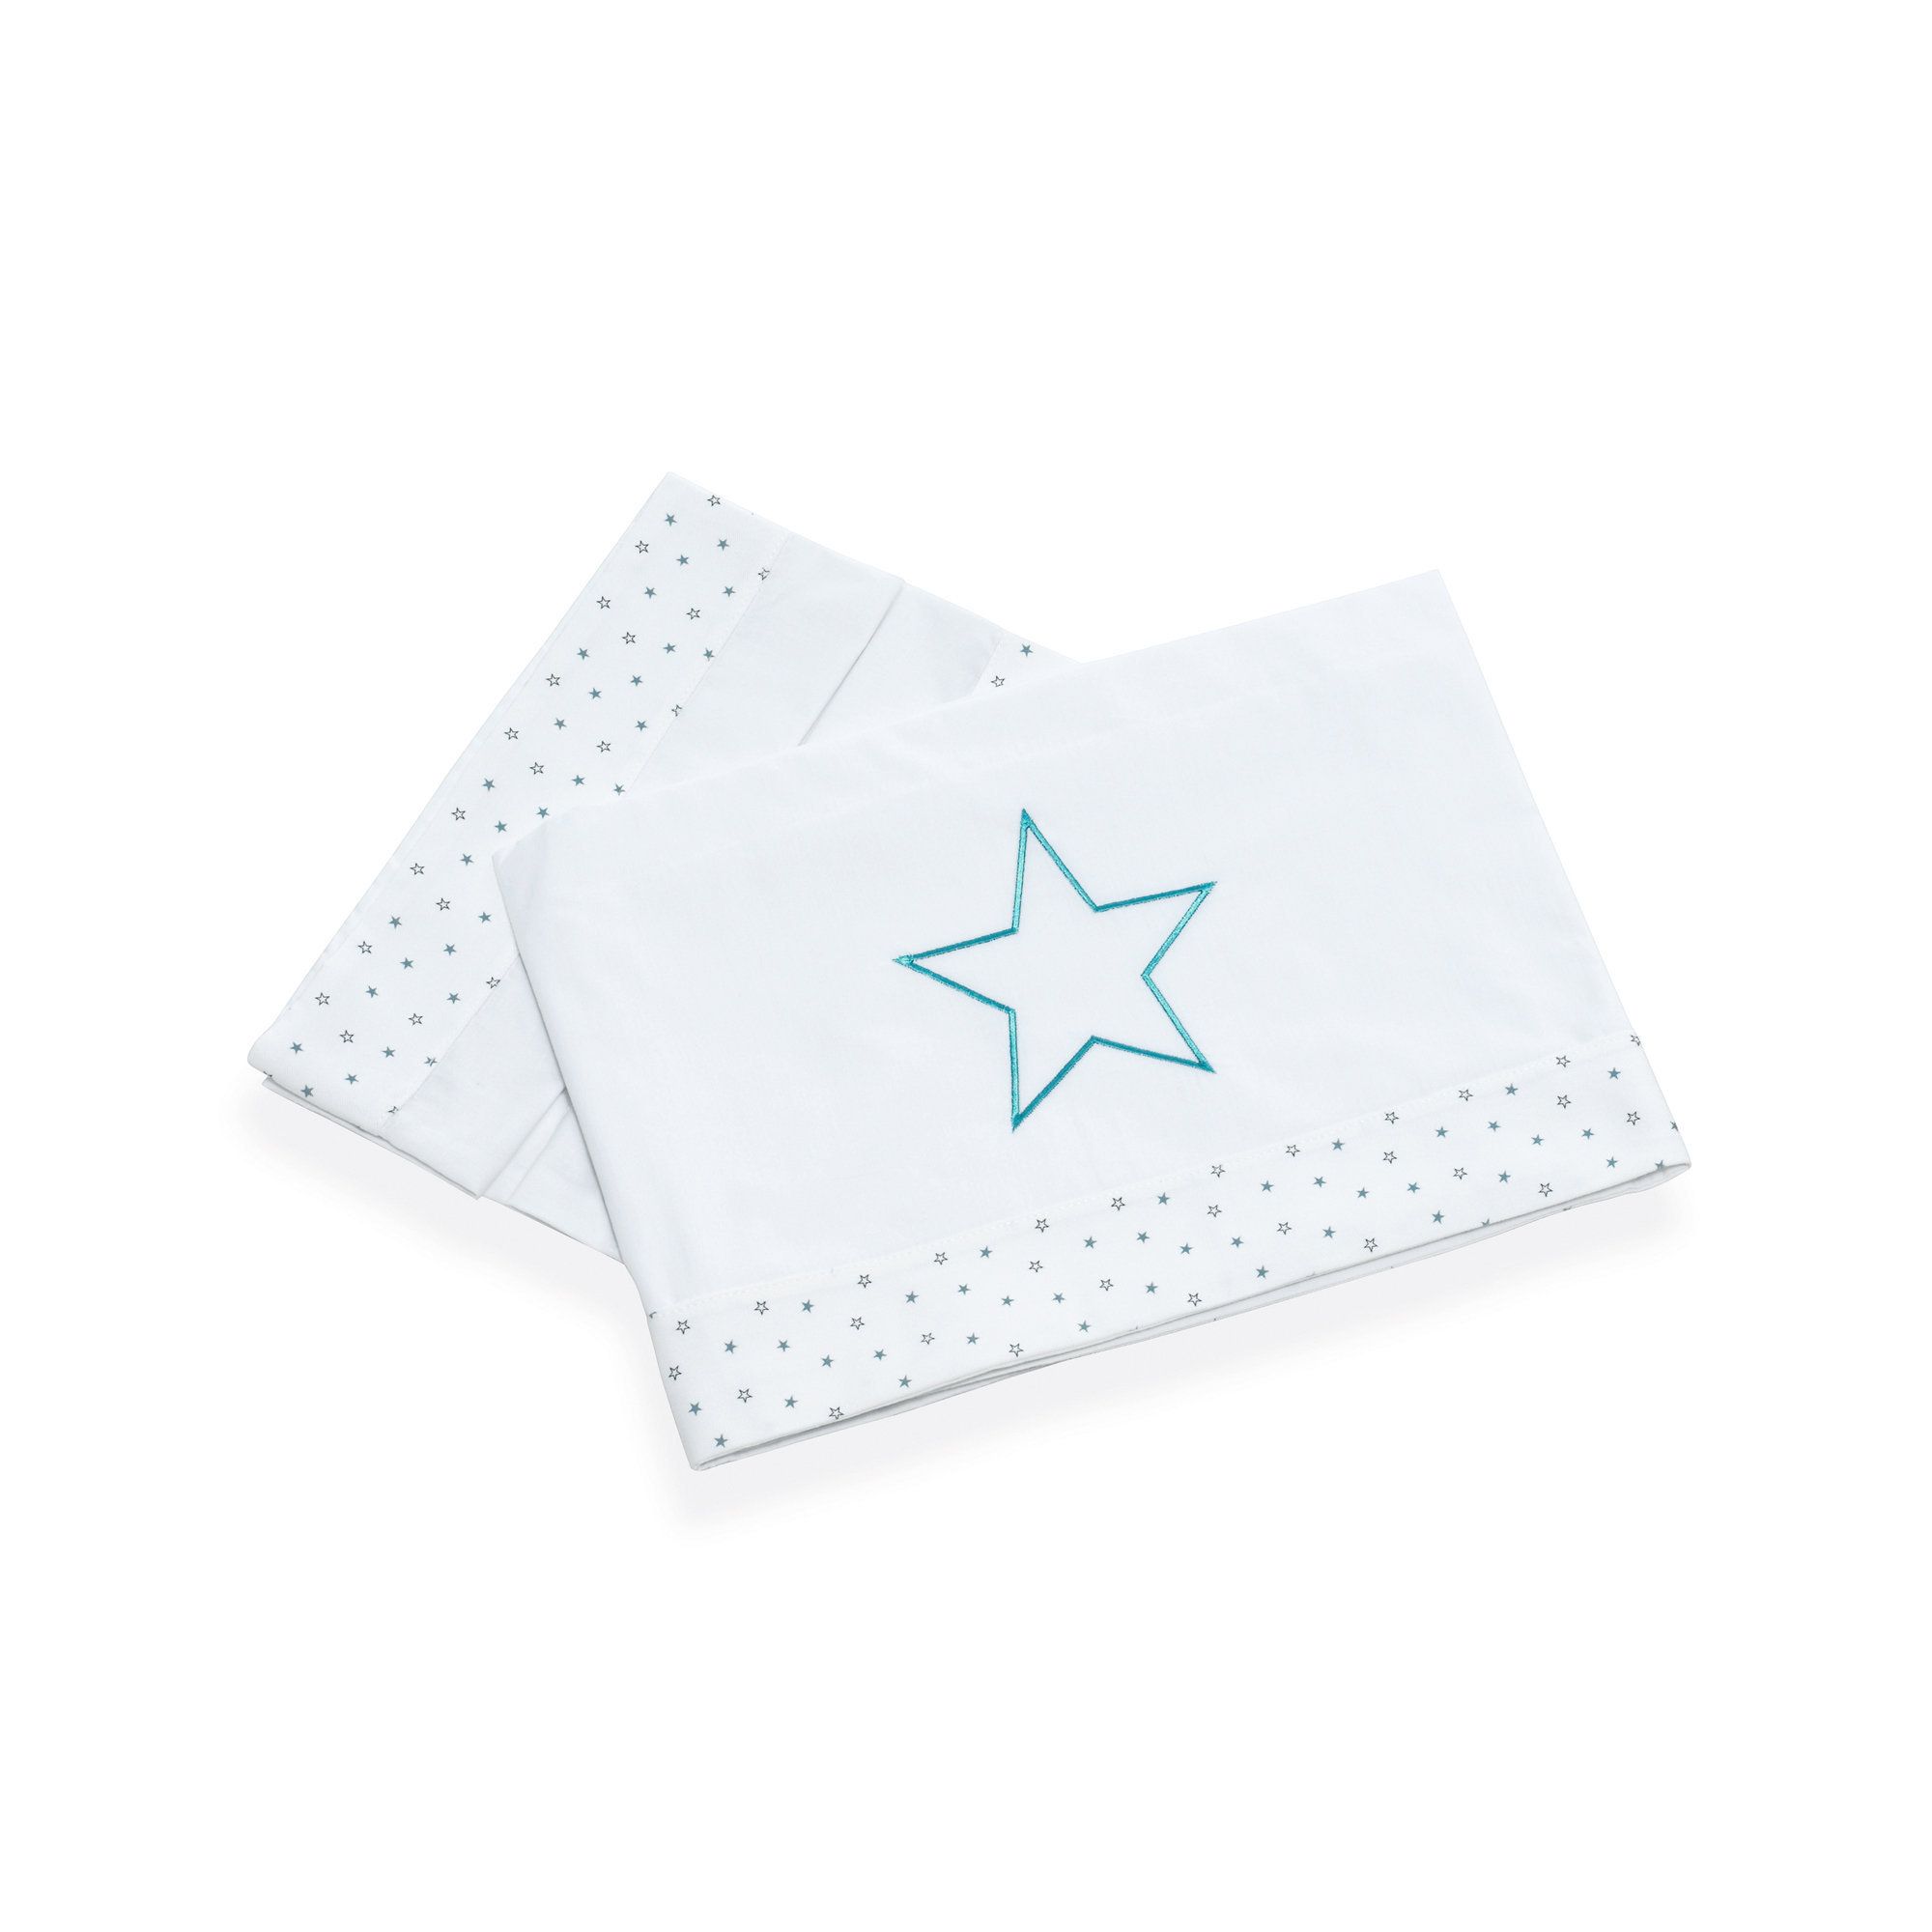 Alondra Mare 181  colore: bianco  Lenzuola Minicuna con stelle per bambini 3 pezzi 